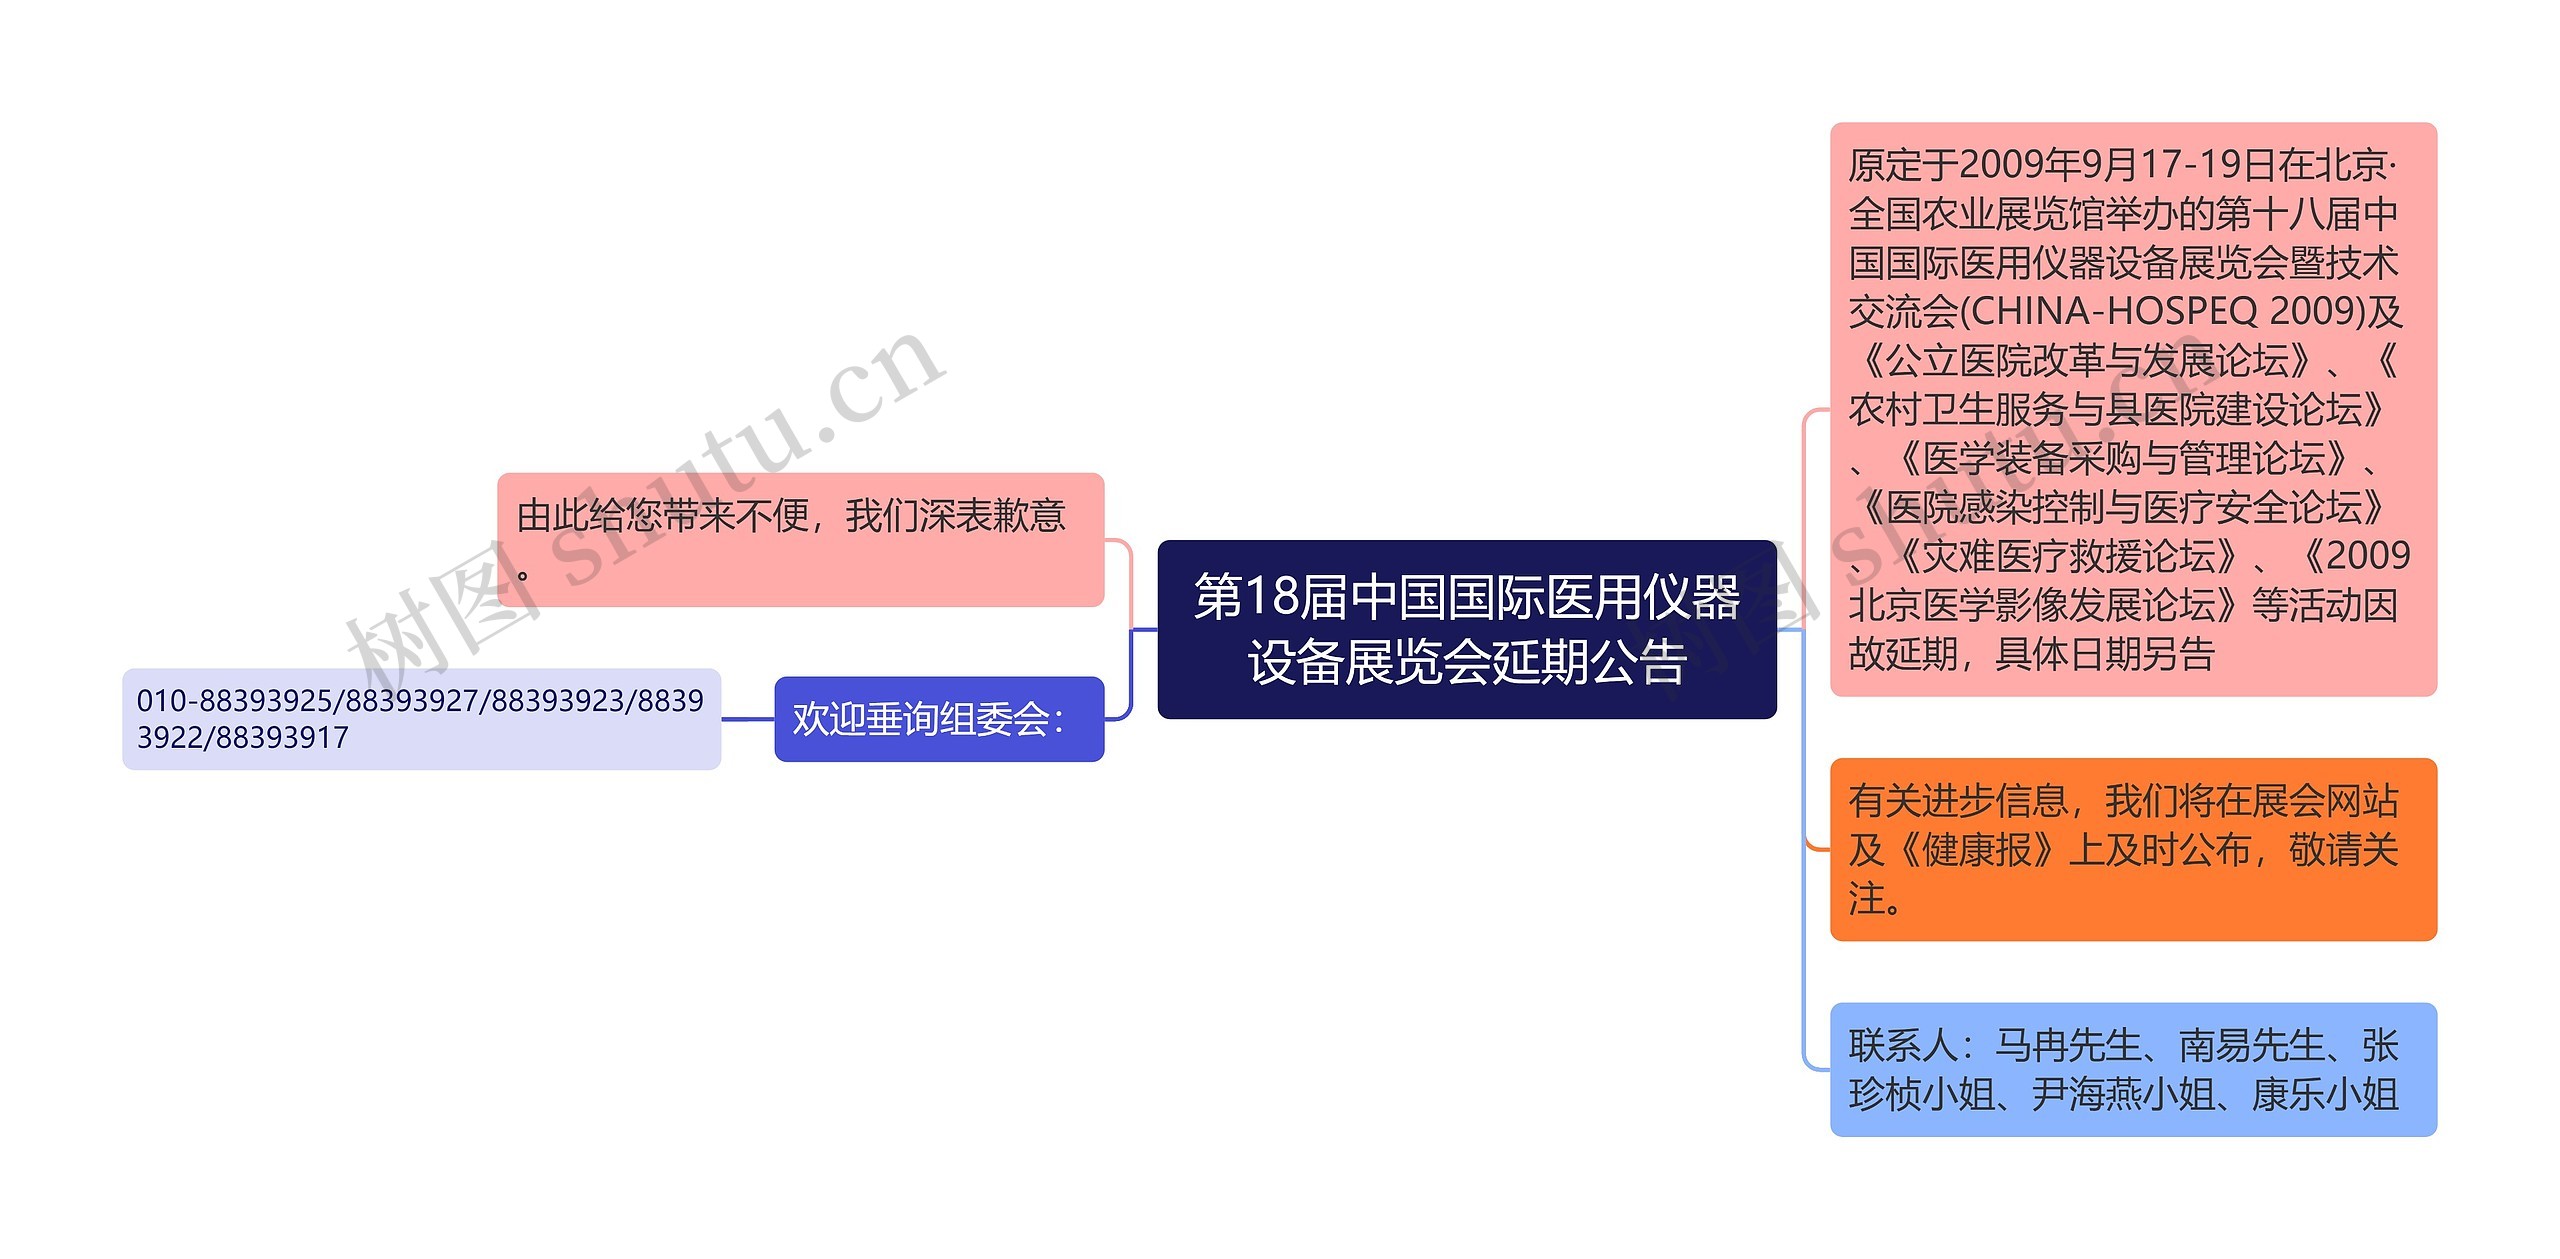 第18届中国国际医用仪器设备展览会延期公告思维导图